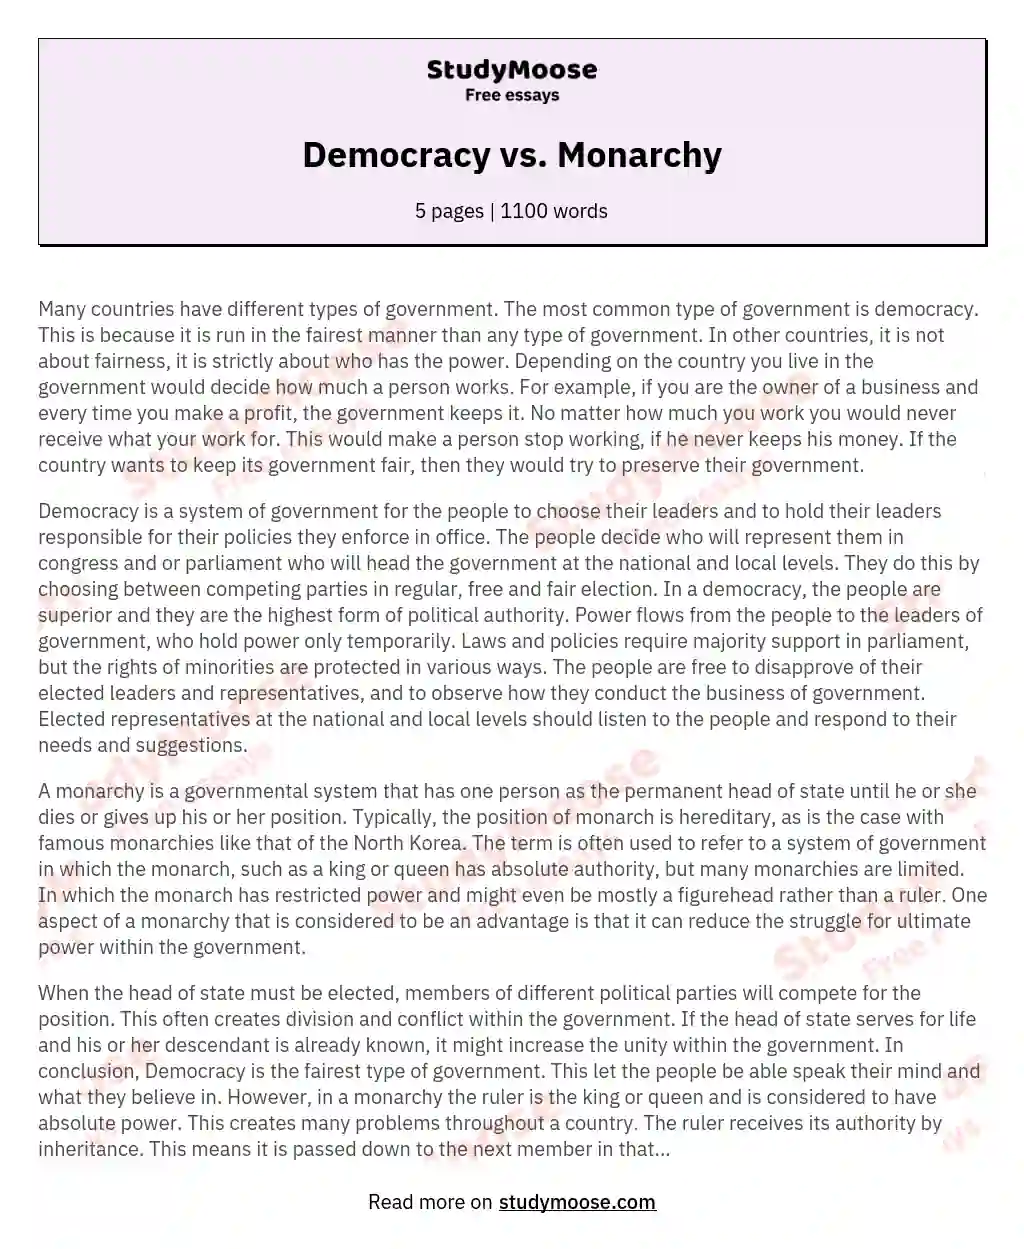 Democracy vs. Monarchy essay